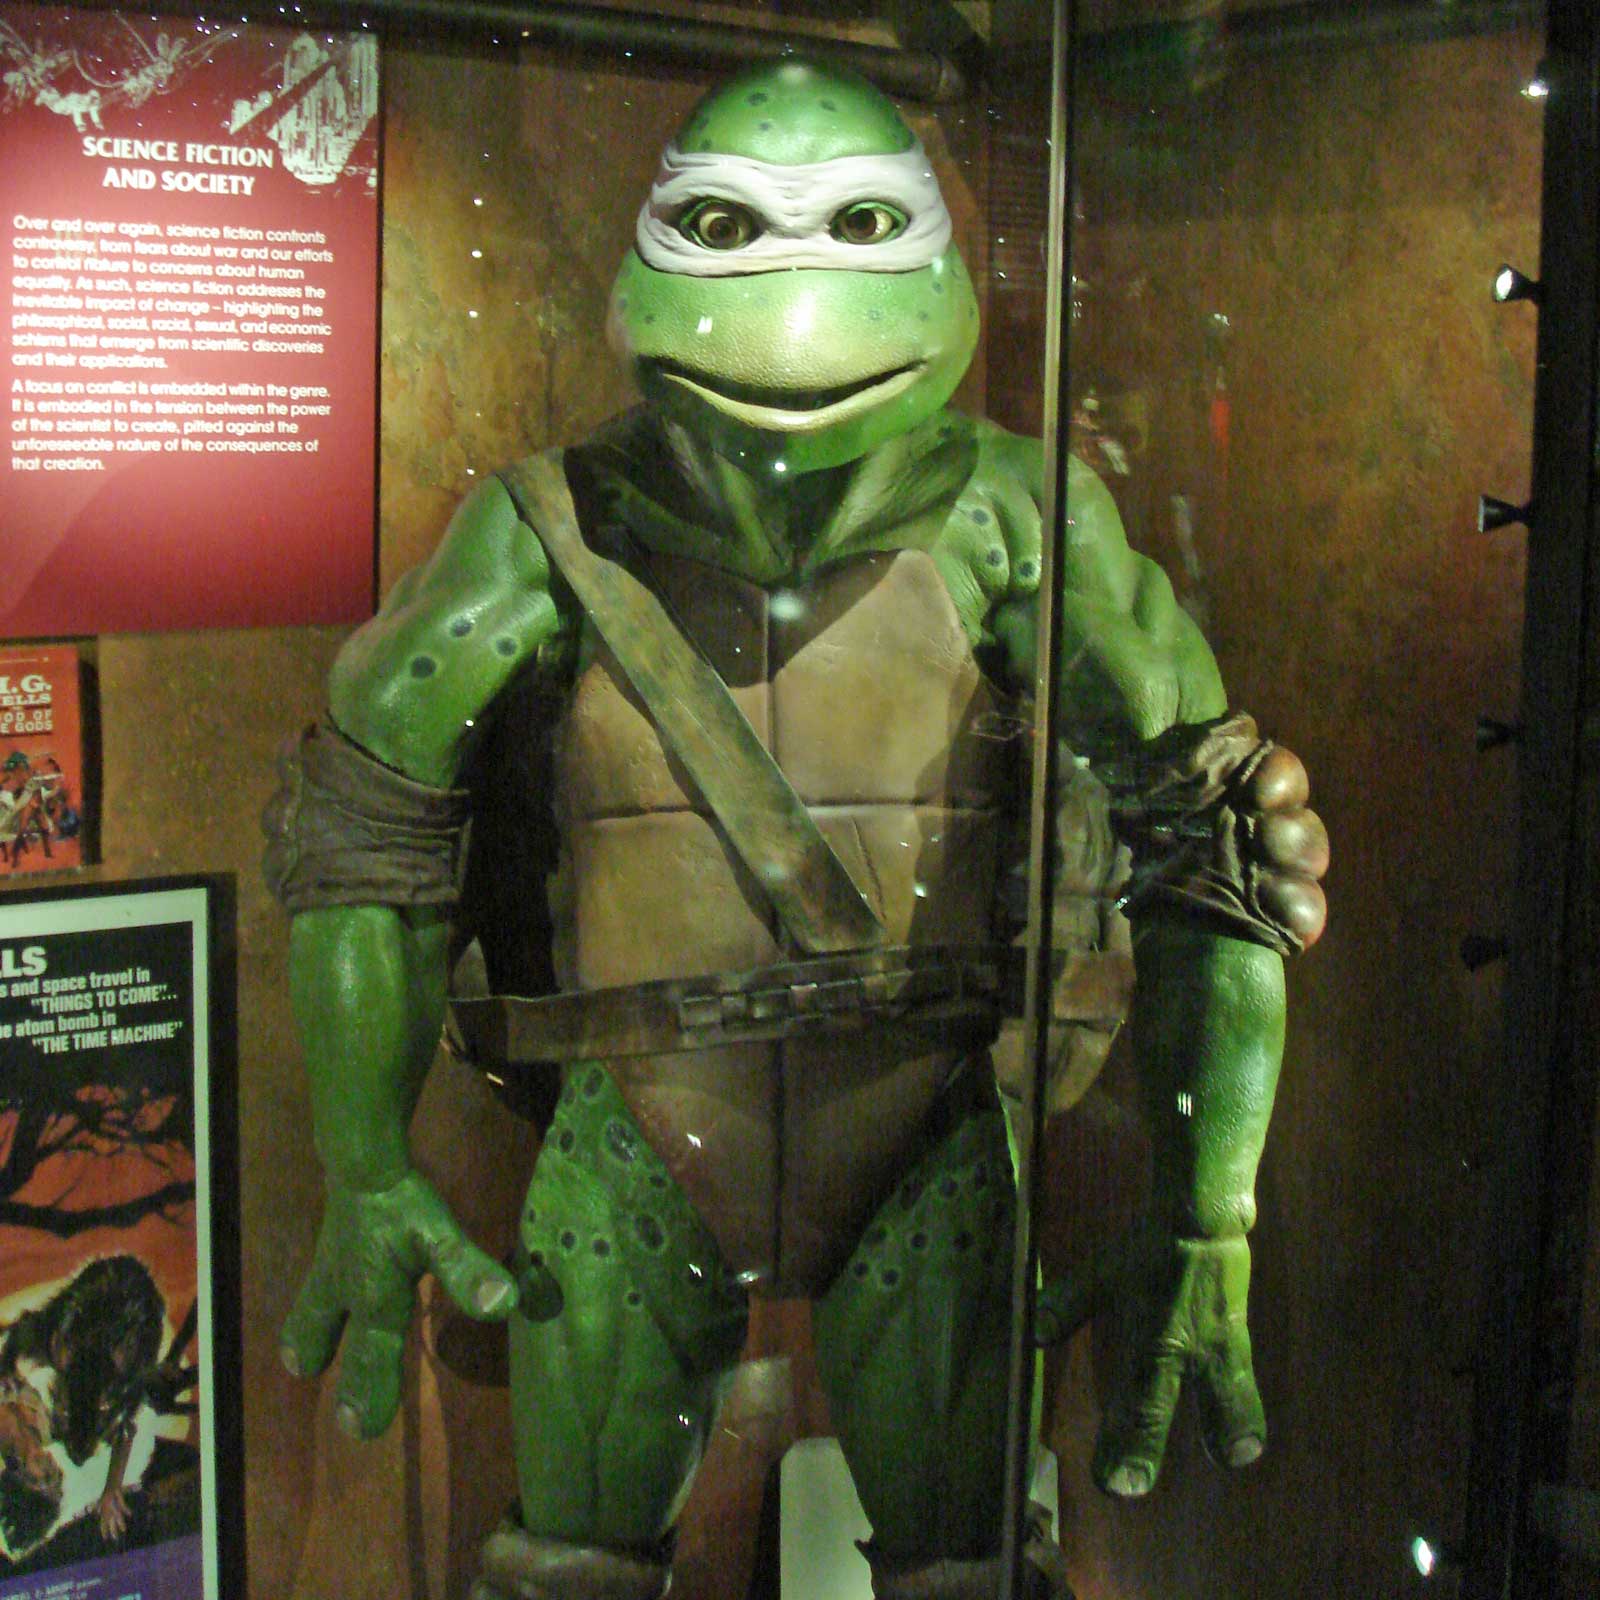 A full-size Teenage Mutant Ninja Turtles costume